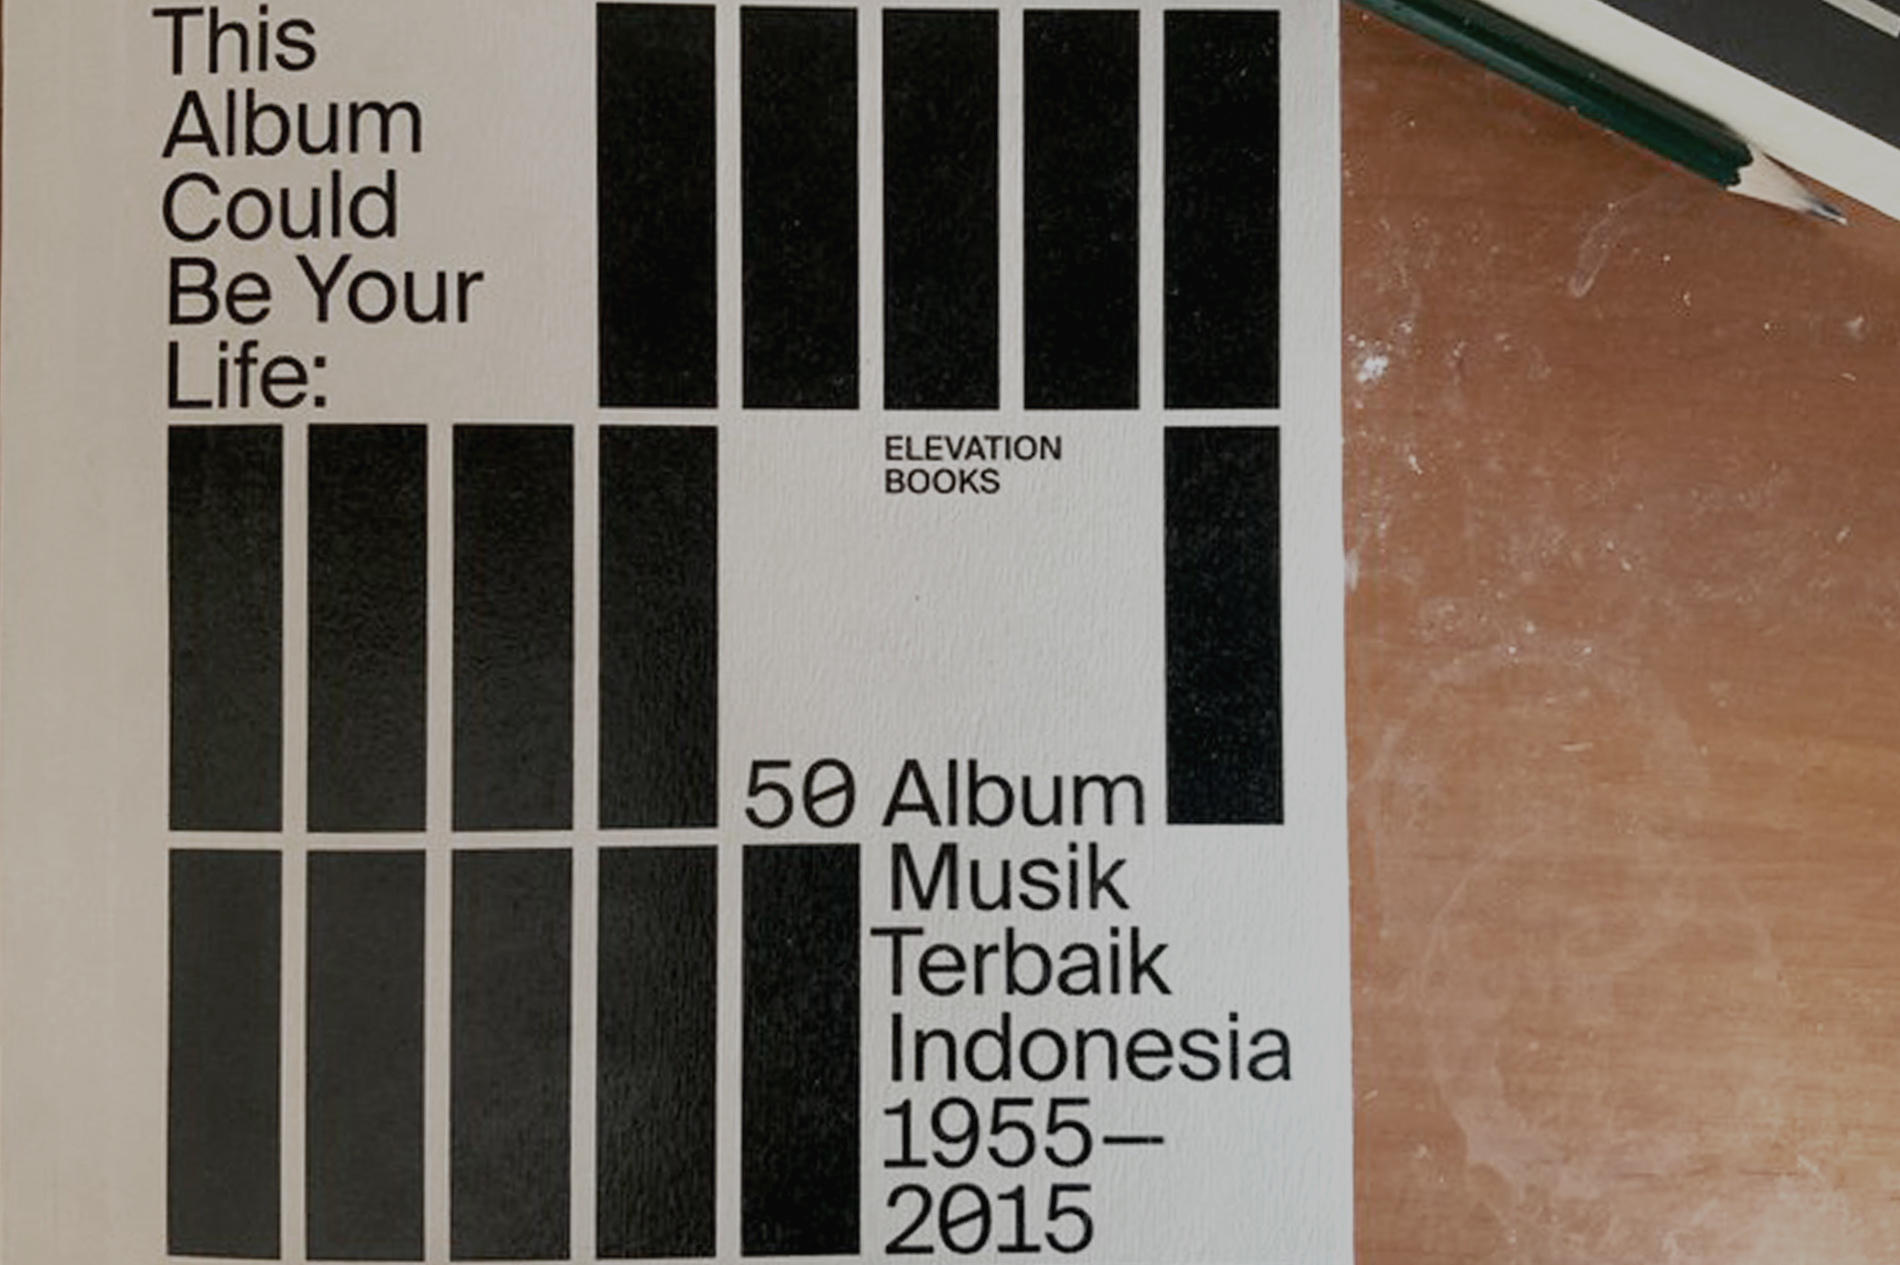 Menanggapi Catatan Taufiq Rahman dalam Buku “This Album Could Be Your Life: 50 Album Musik Terbaik Indonesia 1955-2015”